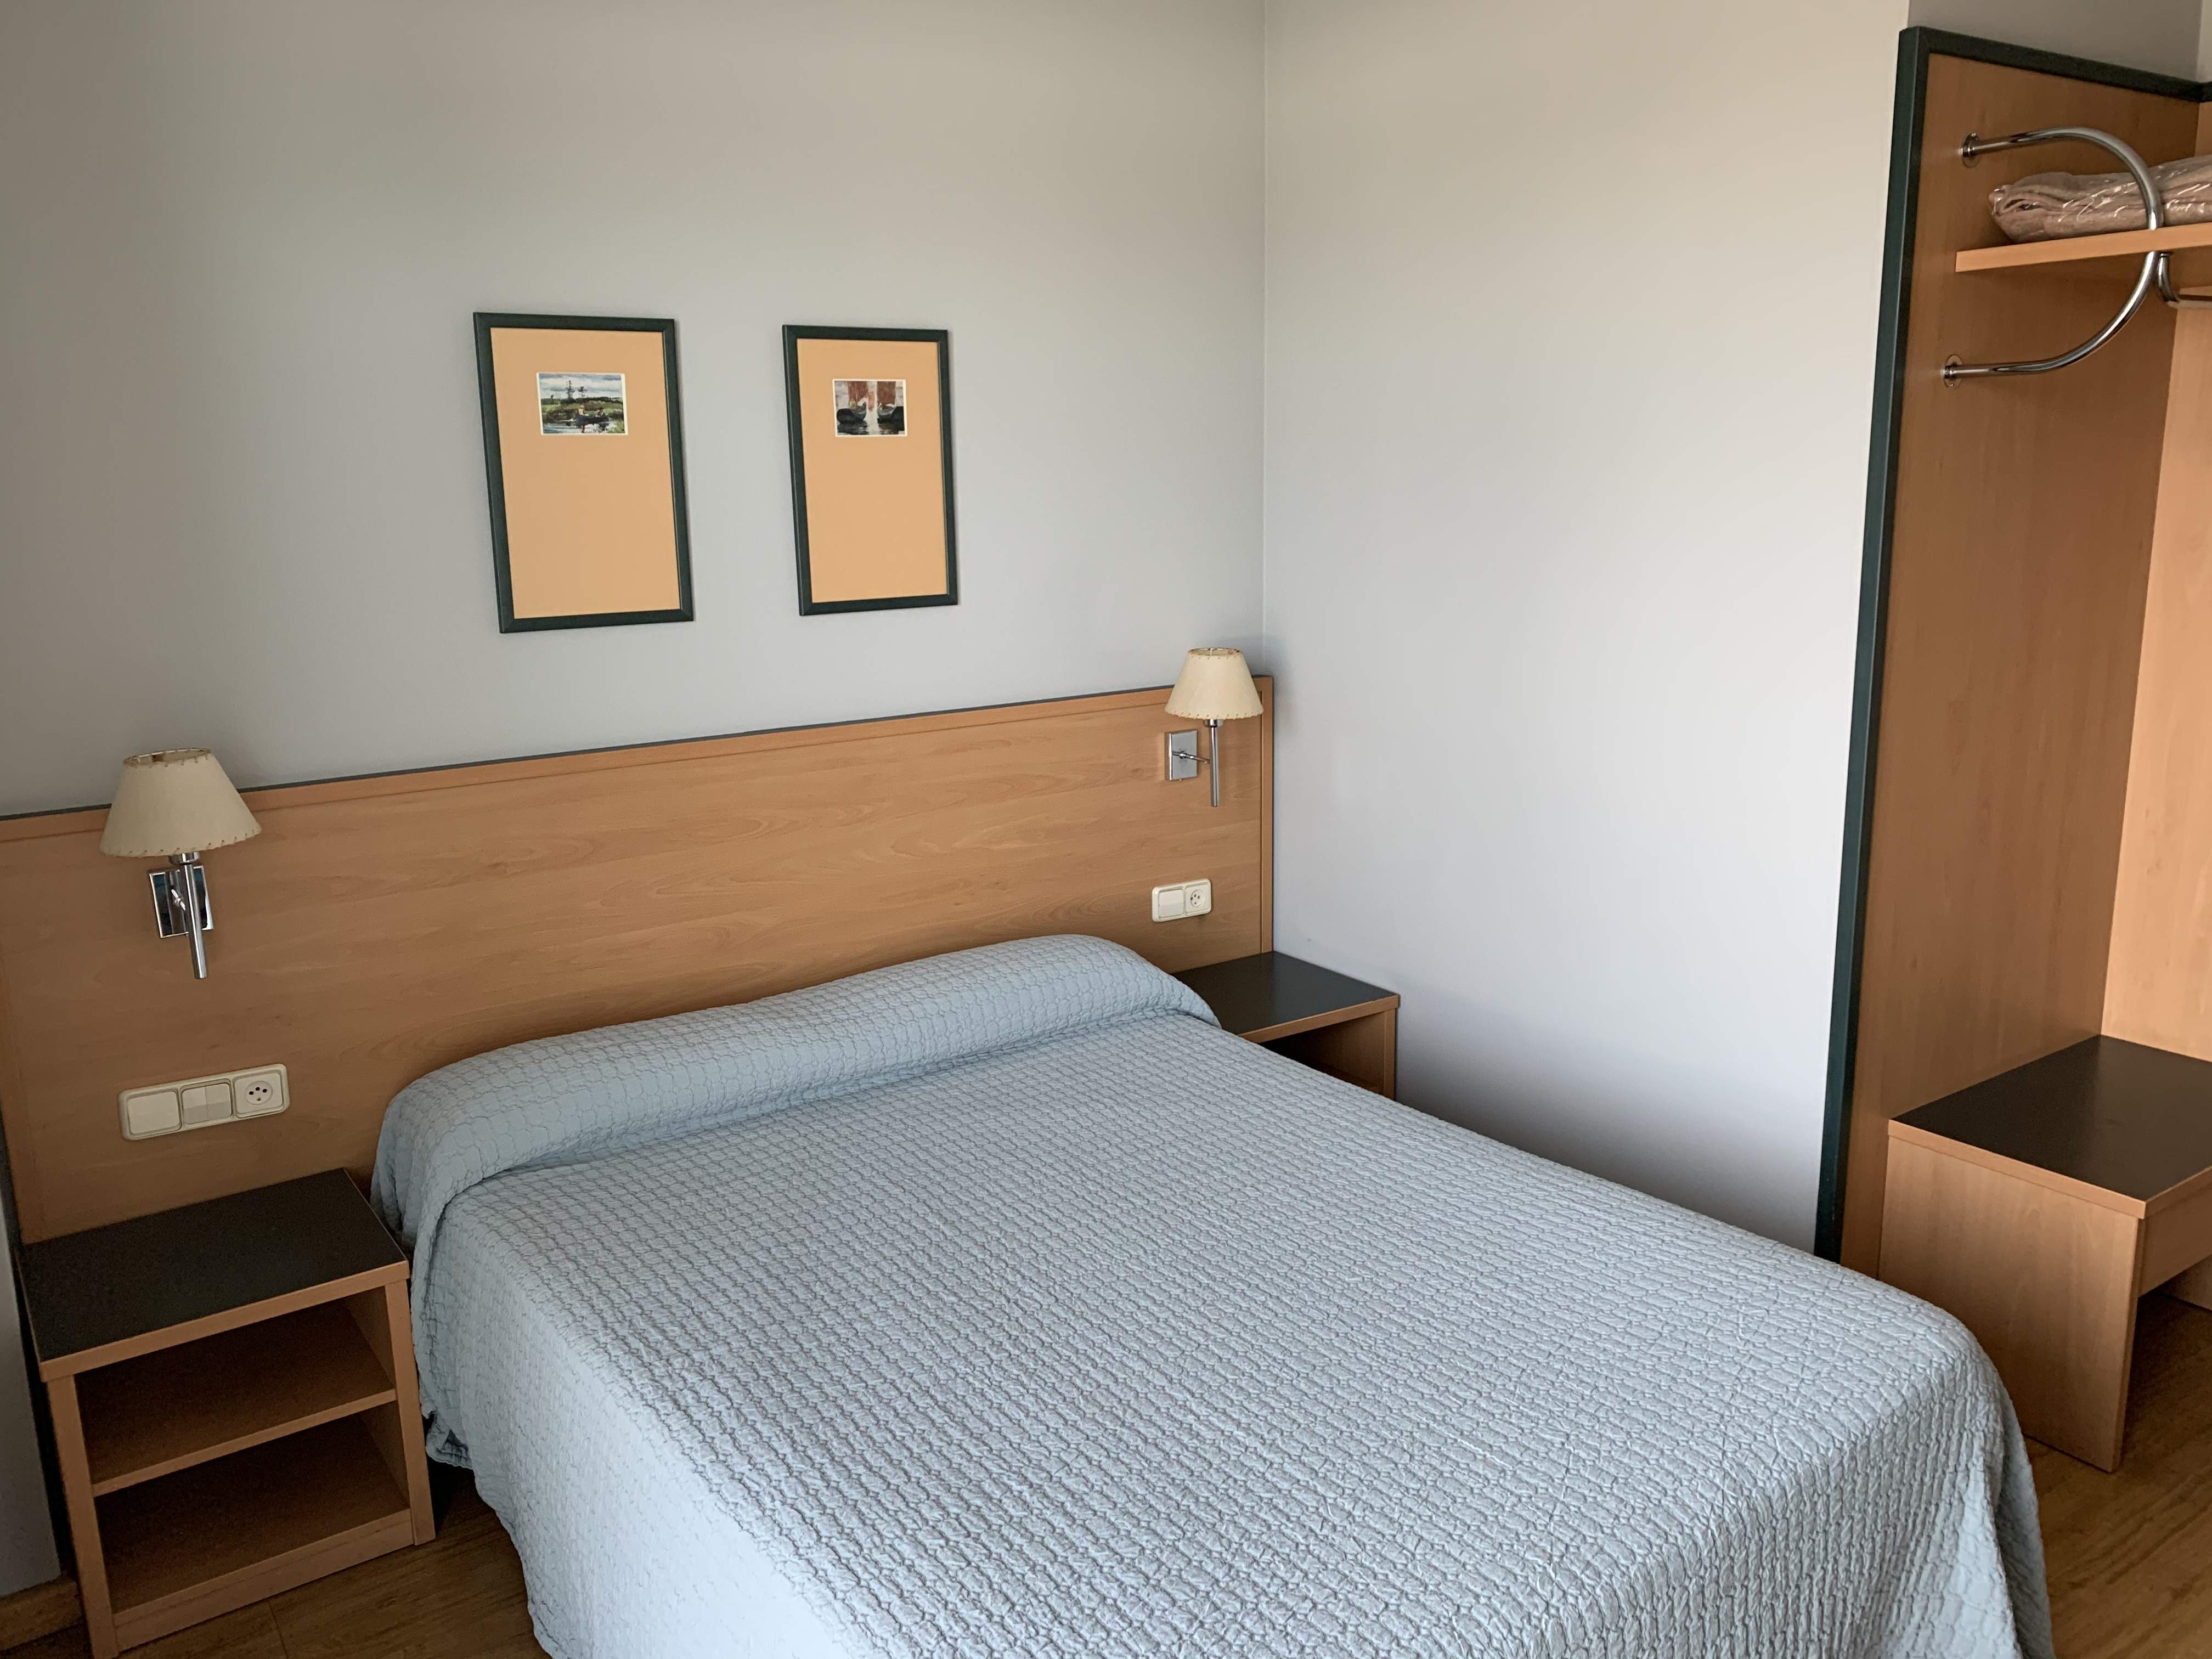 Hotel en Calahorra con habitación de matrimonio y personal altamente cualificado